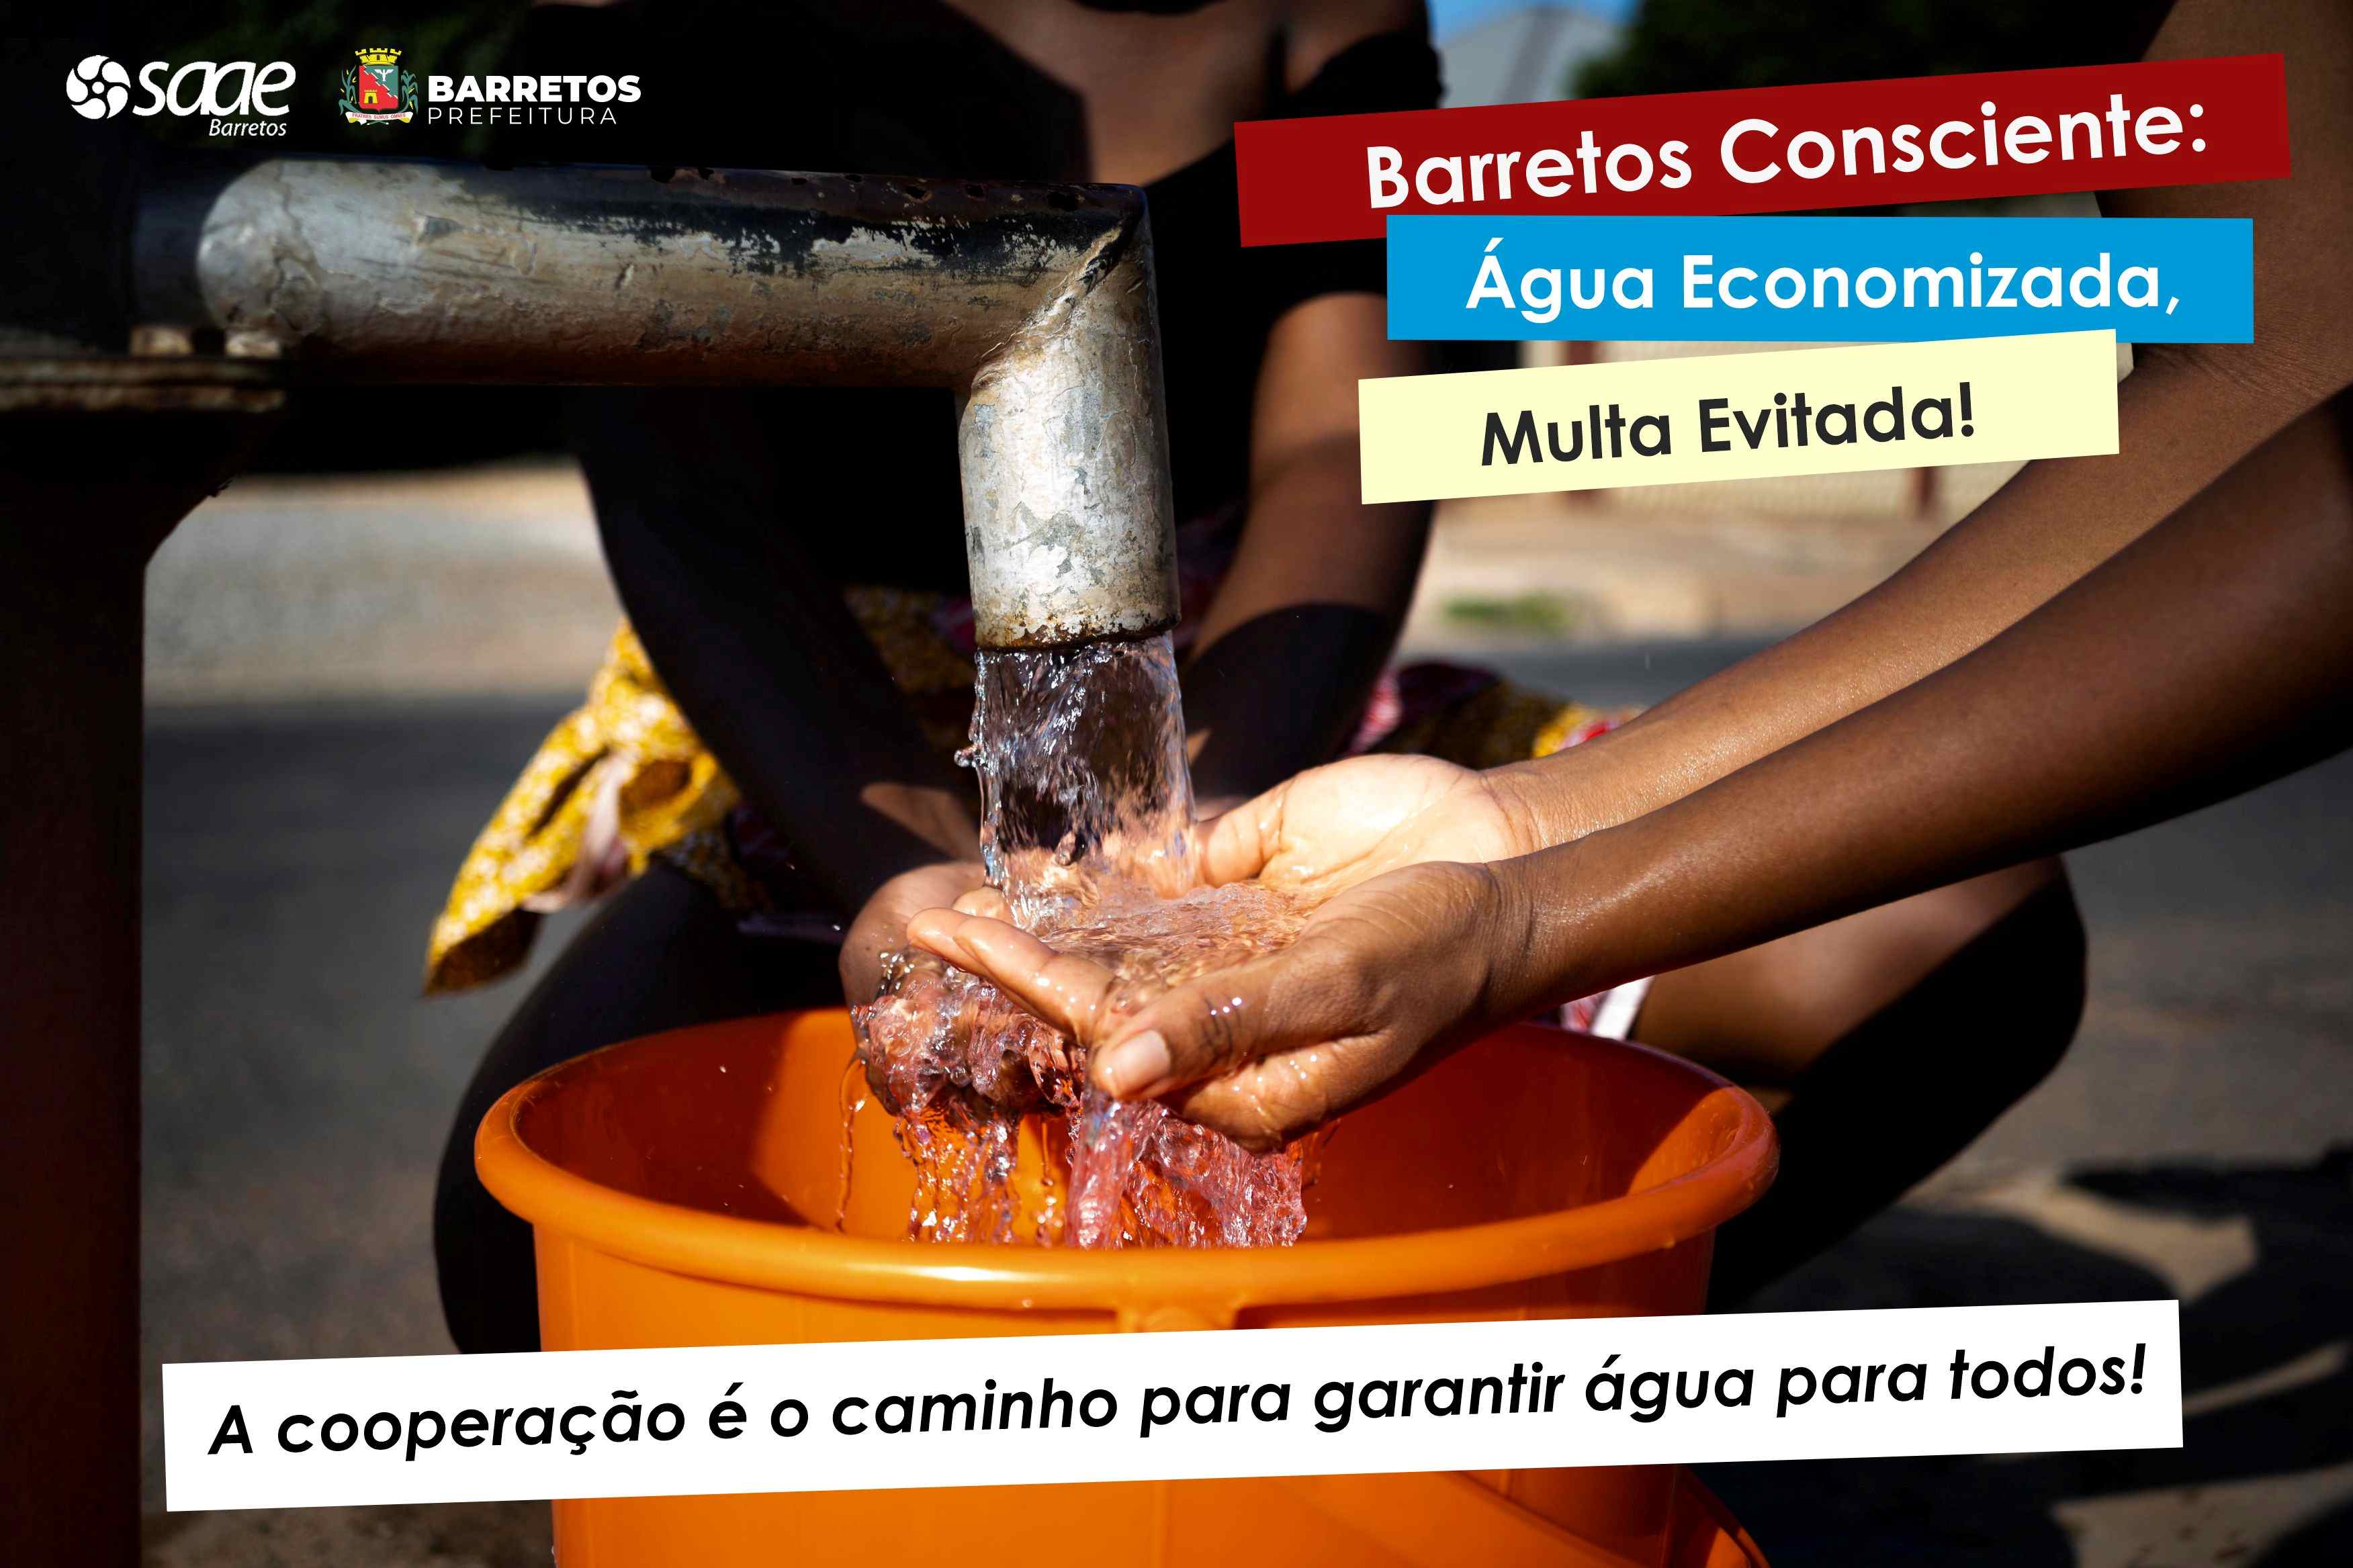 SAAE Barretos Lança Campanha de Conscientização "Barretos Consciente: Água Economizada, Multa Evitada!"